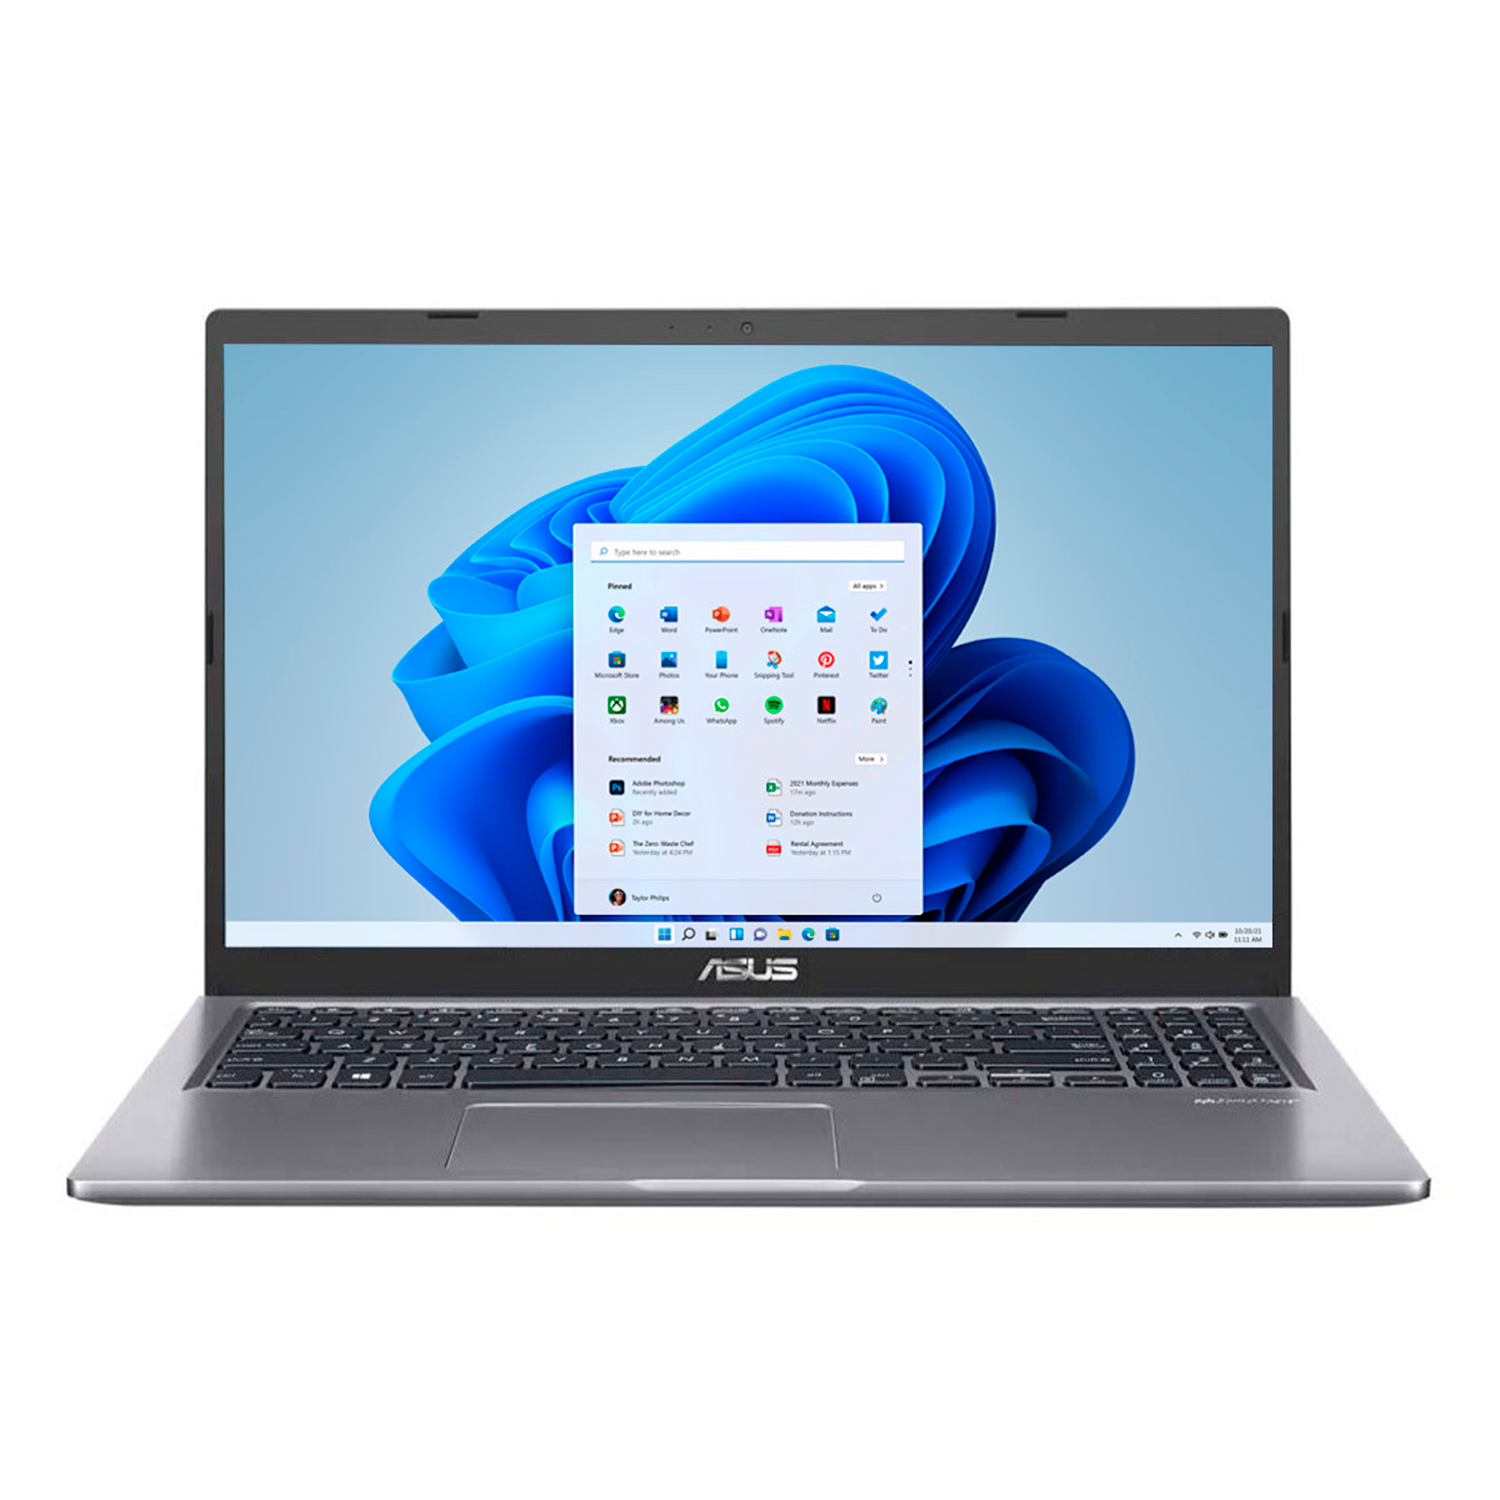 Notebook Asus F515EA-DH75 I7-1165G7 8GB / 512GB SSD / Tela 15.6" FHD / Windows 11 - Cinza